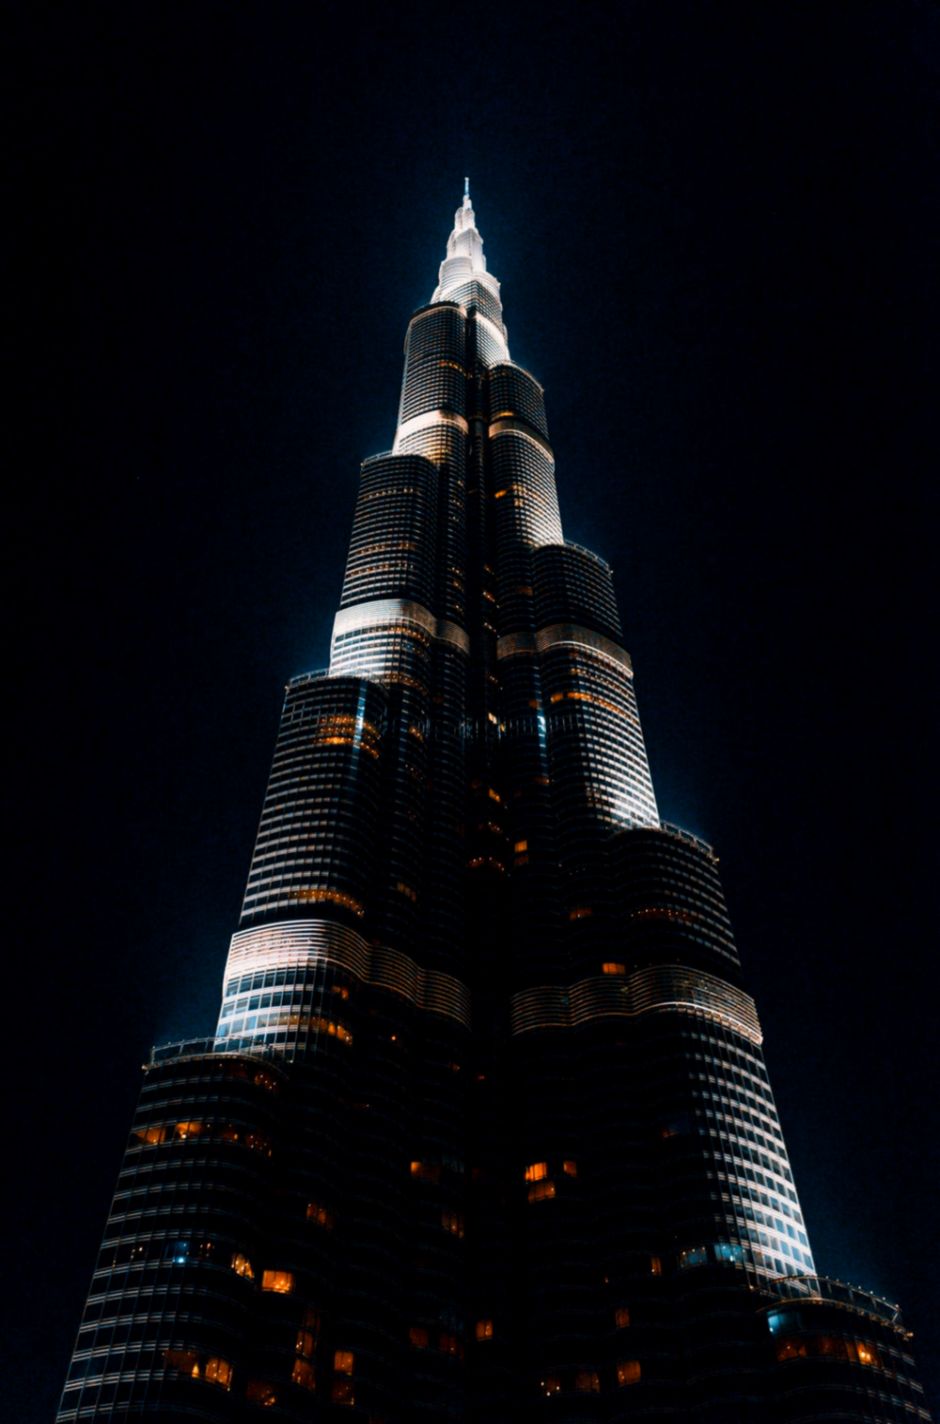 Best Dubai Pictures Hd Download Free Images On Unsplash - Burj Park , HD Wallpaper & Backgrounds